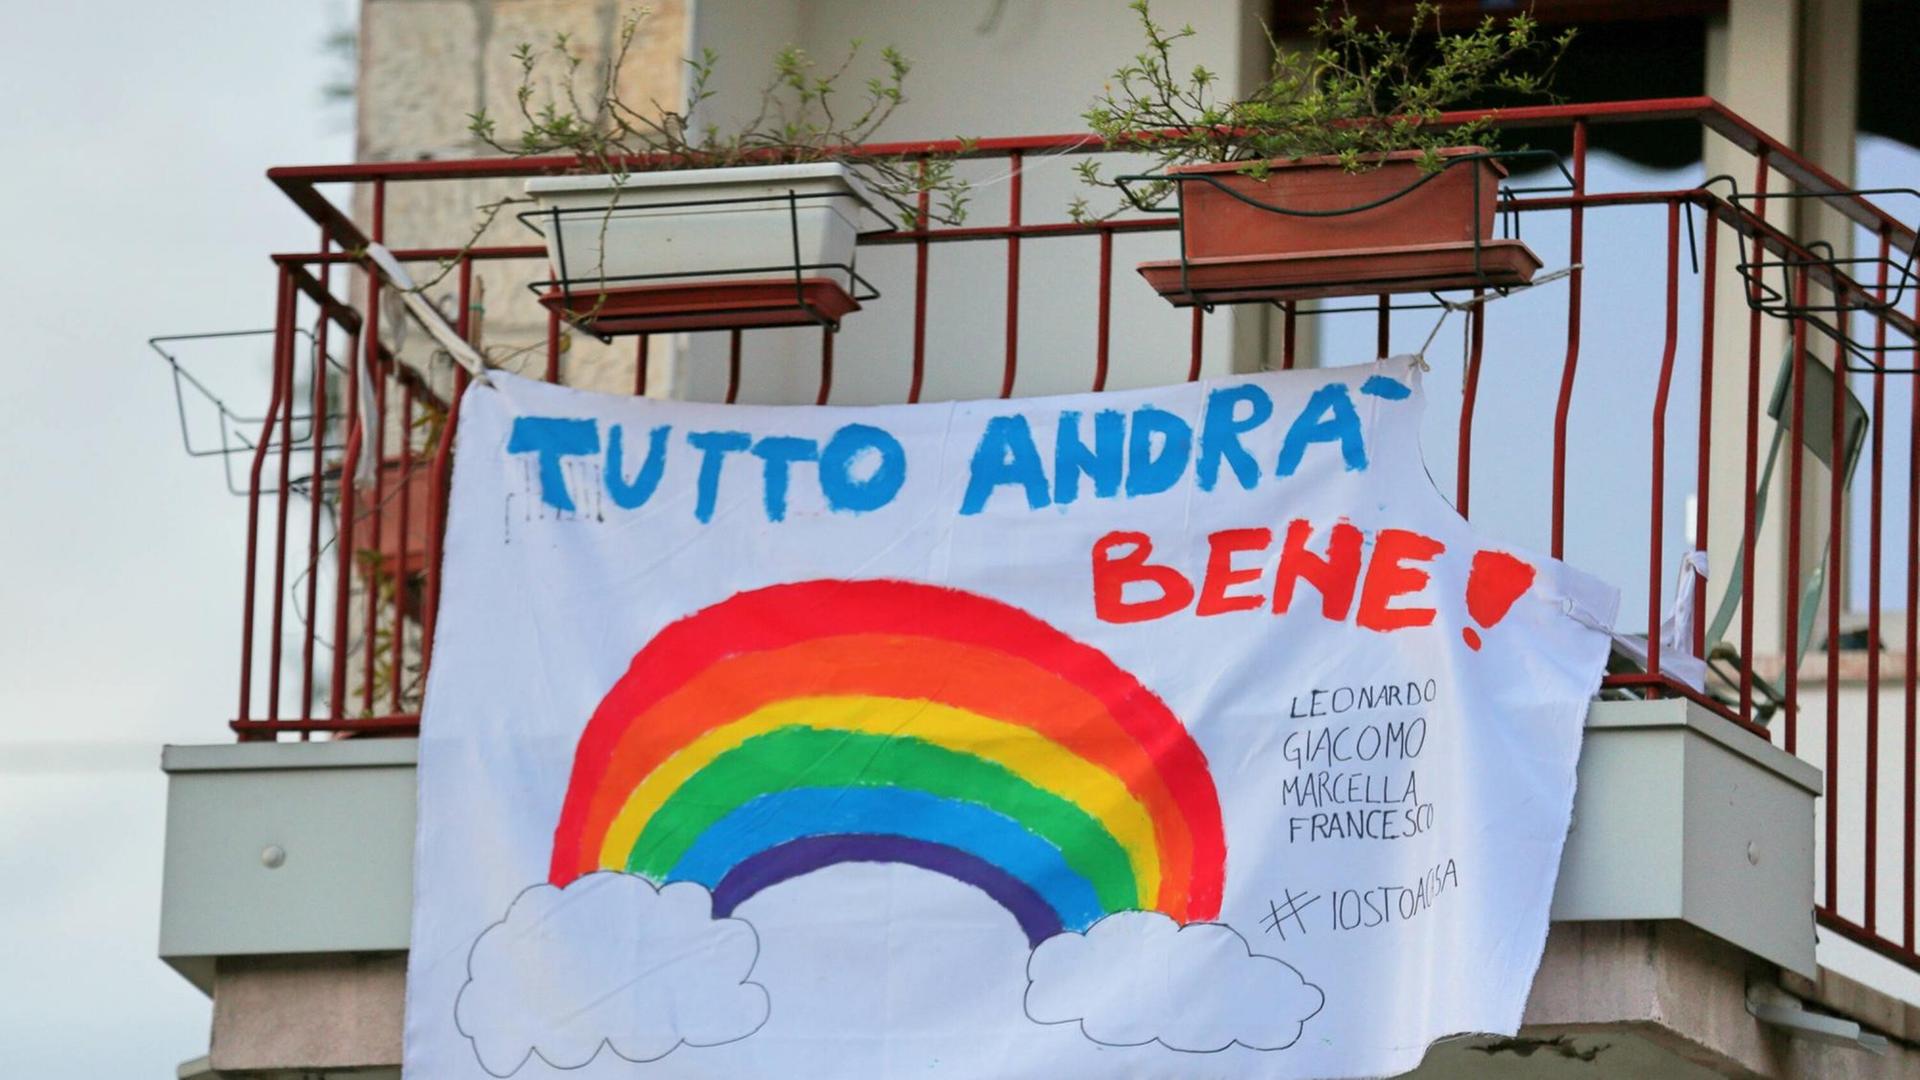 "Alles wird gut" hat jemand auf Italienisch auf ein Laken in Verona geschrieben und dieses über ein Balkongeländer gehängt